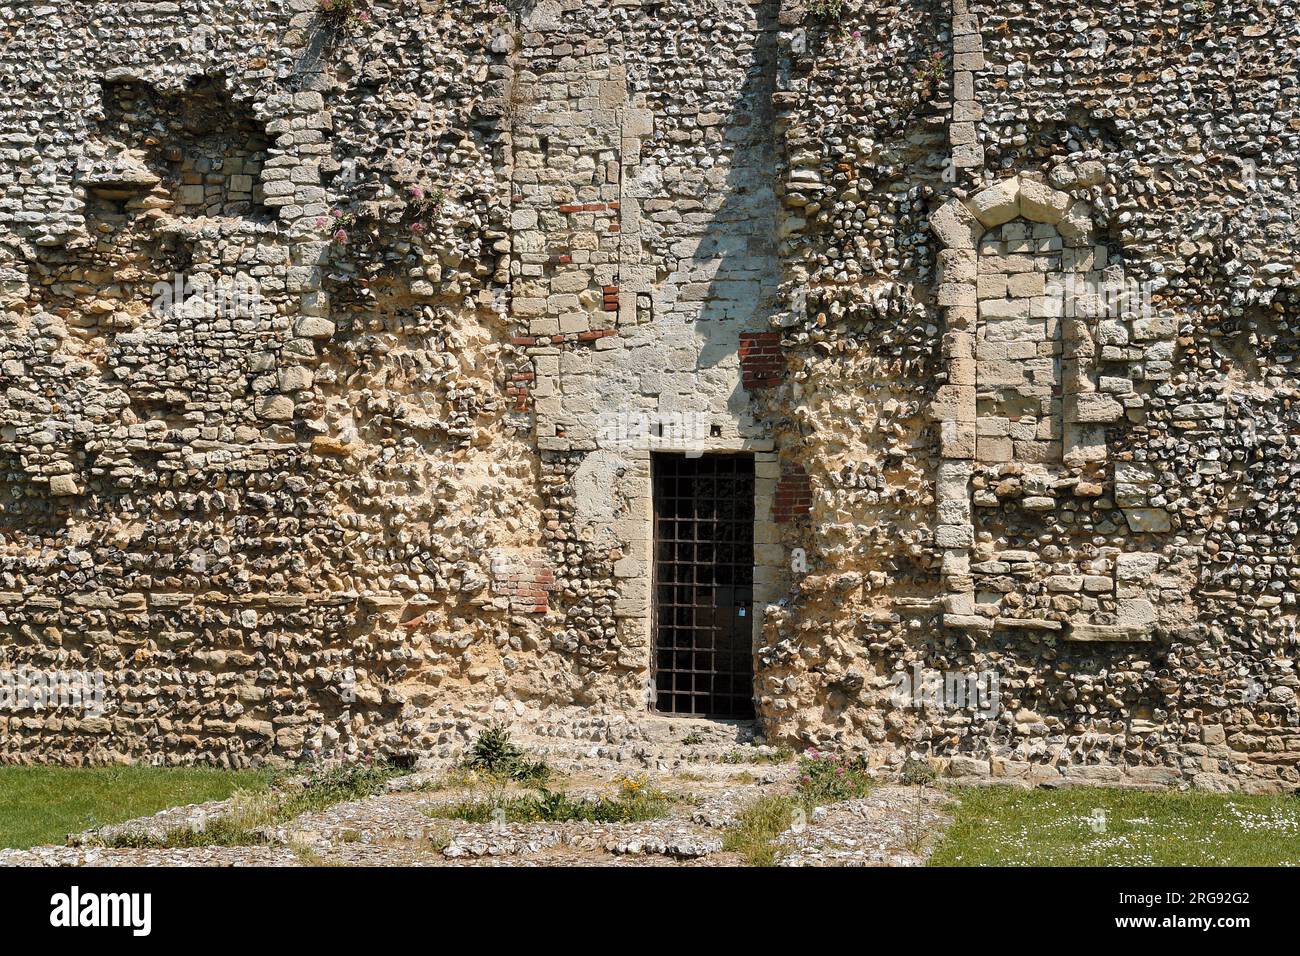 Vista ravvicinata della variegata muratura del castello di Portchester, vicino a Portsmouth, Hampshire, che mostra come l'edificio sia stato aggiunto nel corso dei secoli. Costruito come forte romano alla fine del III secolo, divenne un castello normanno nel XII secolo, Riccardo II ne trasformò parte in un palazzo nel 1396, e Enrico V partì da qui nel 1415. Foto Stock